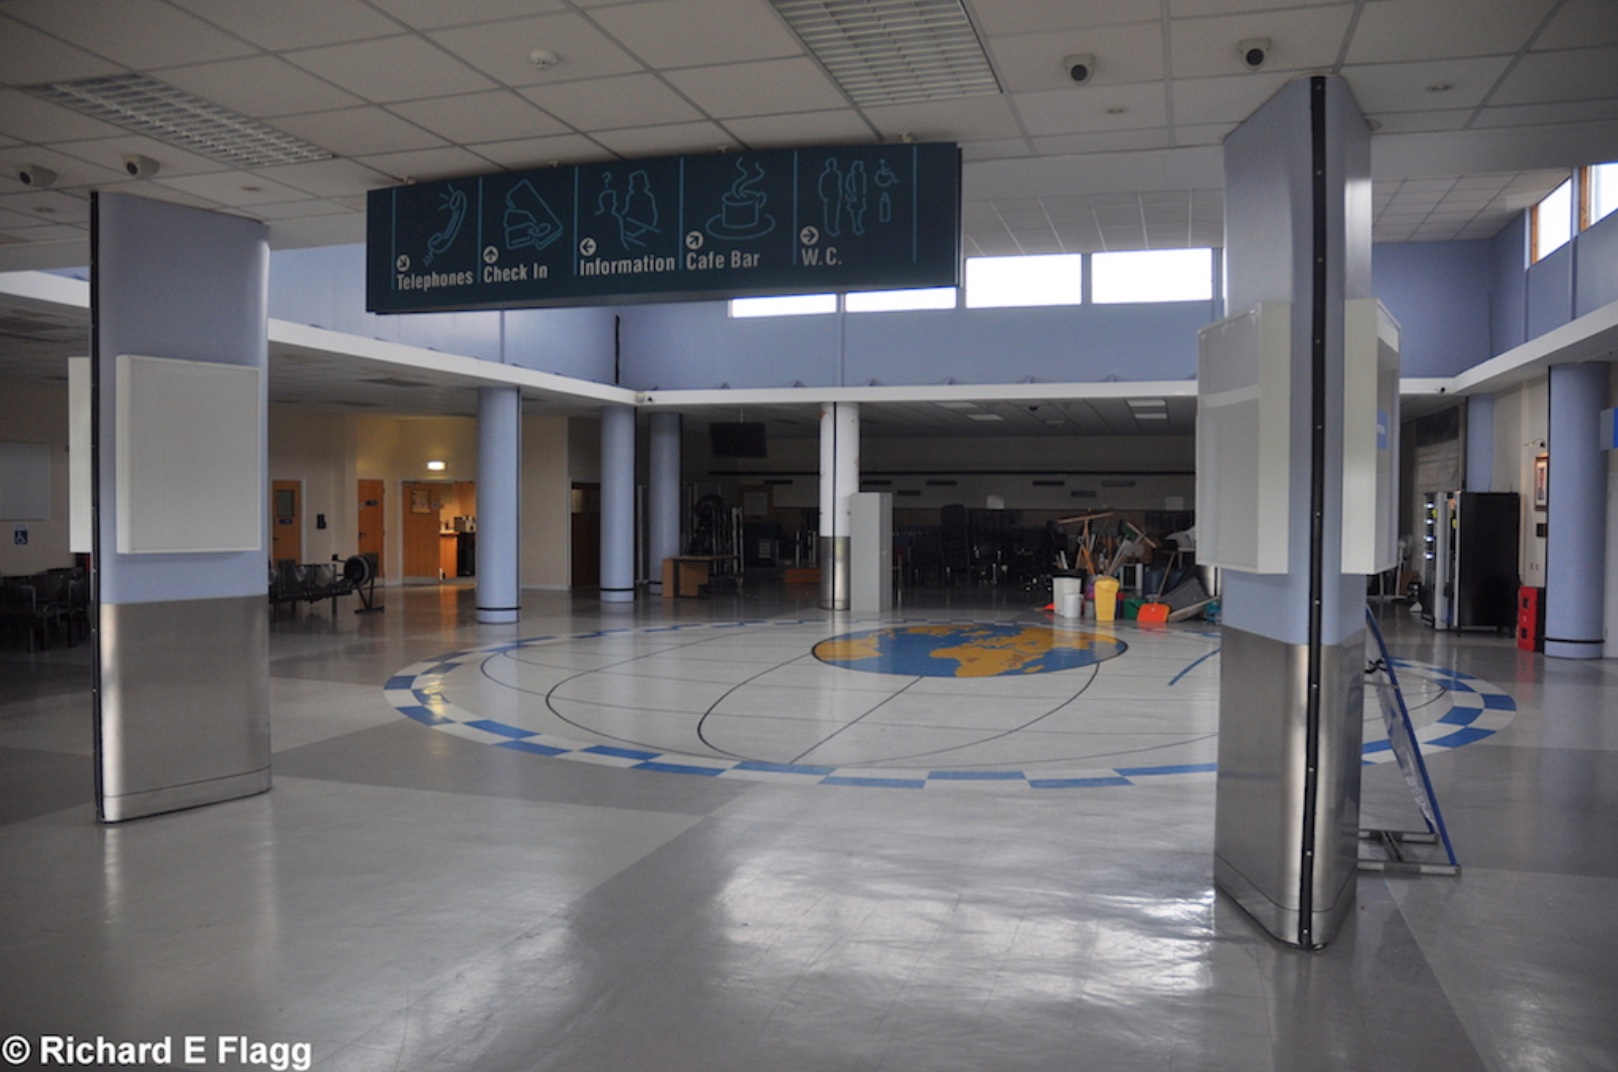 007Airport Terminal Interior - 26 May 2014.png